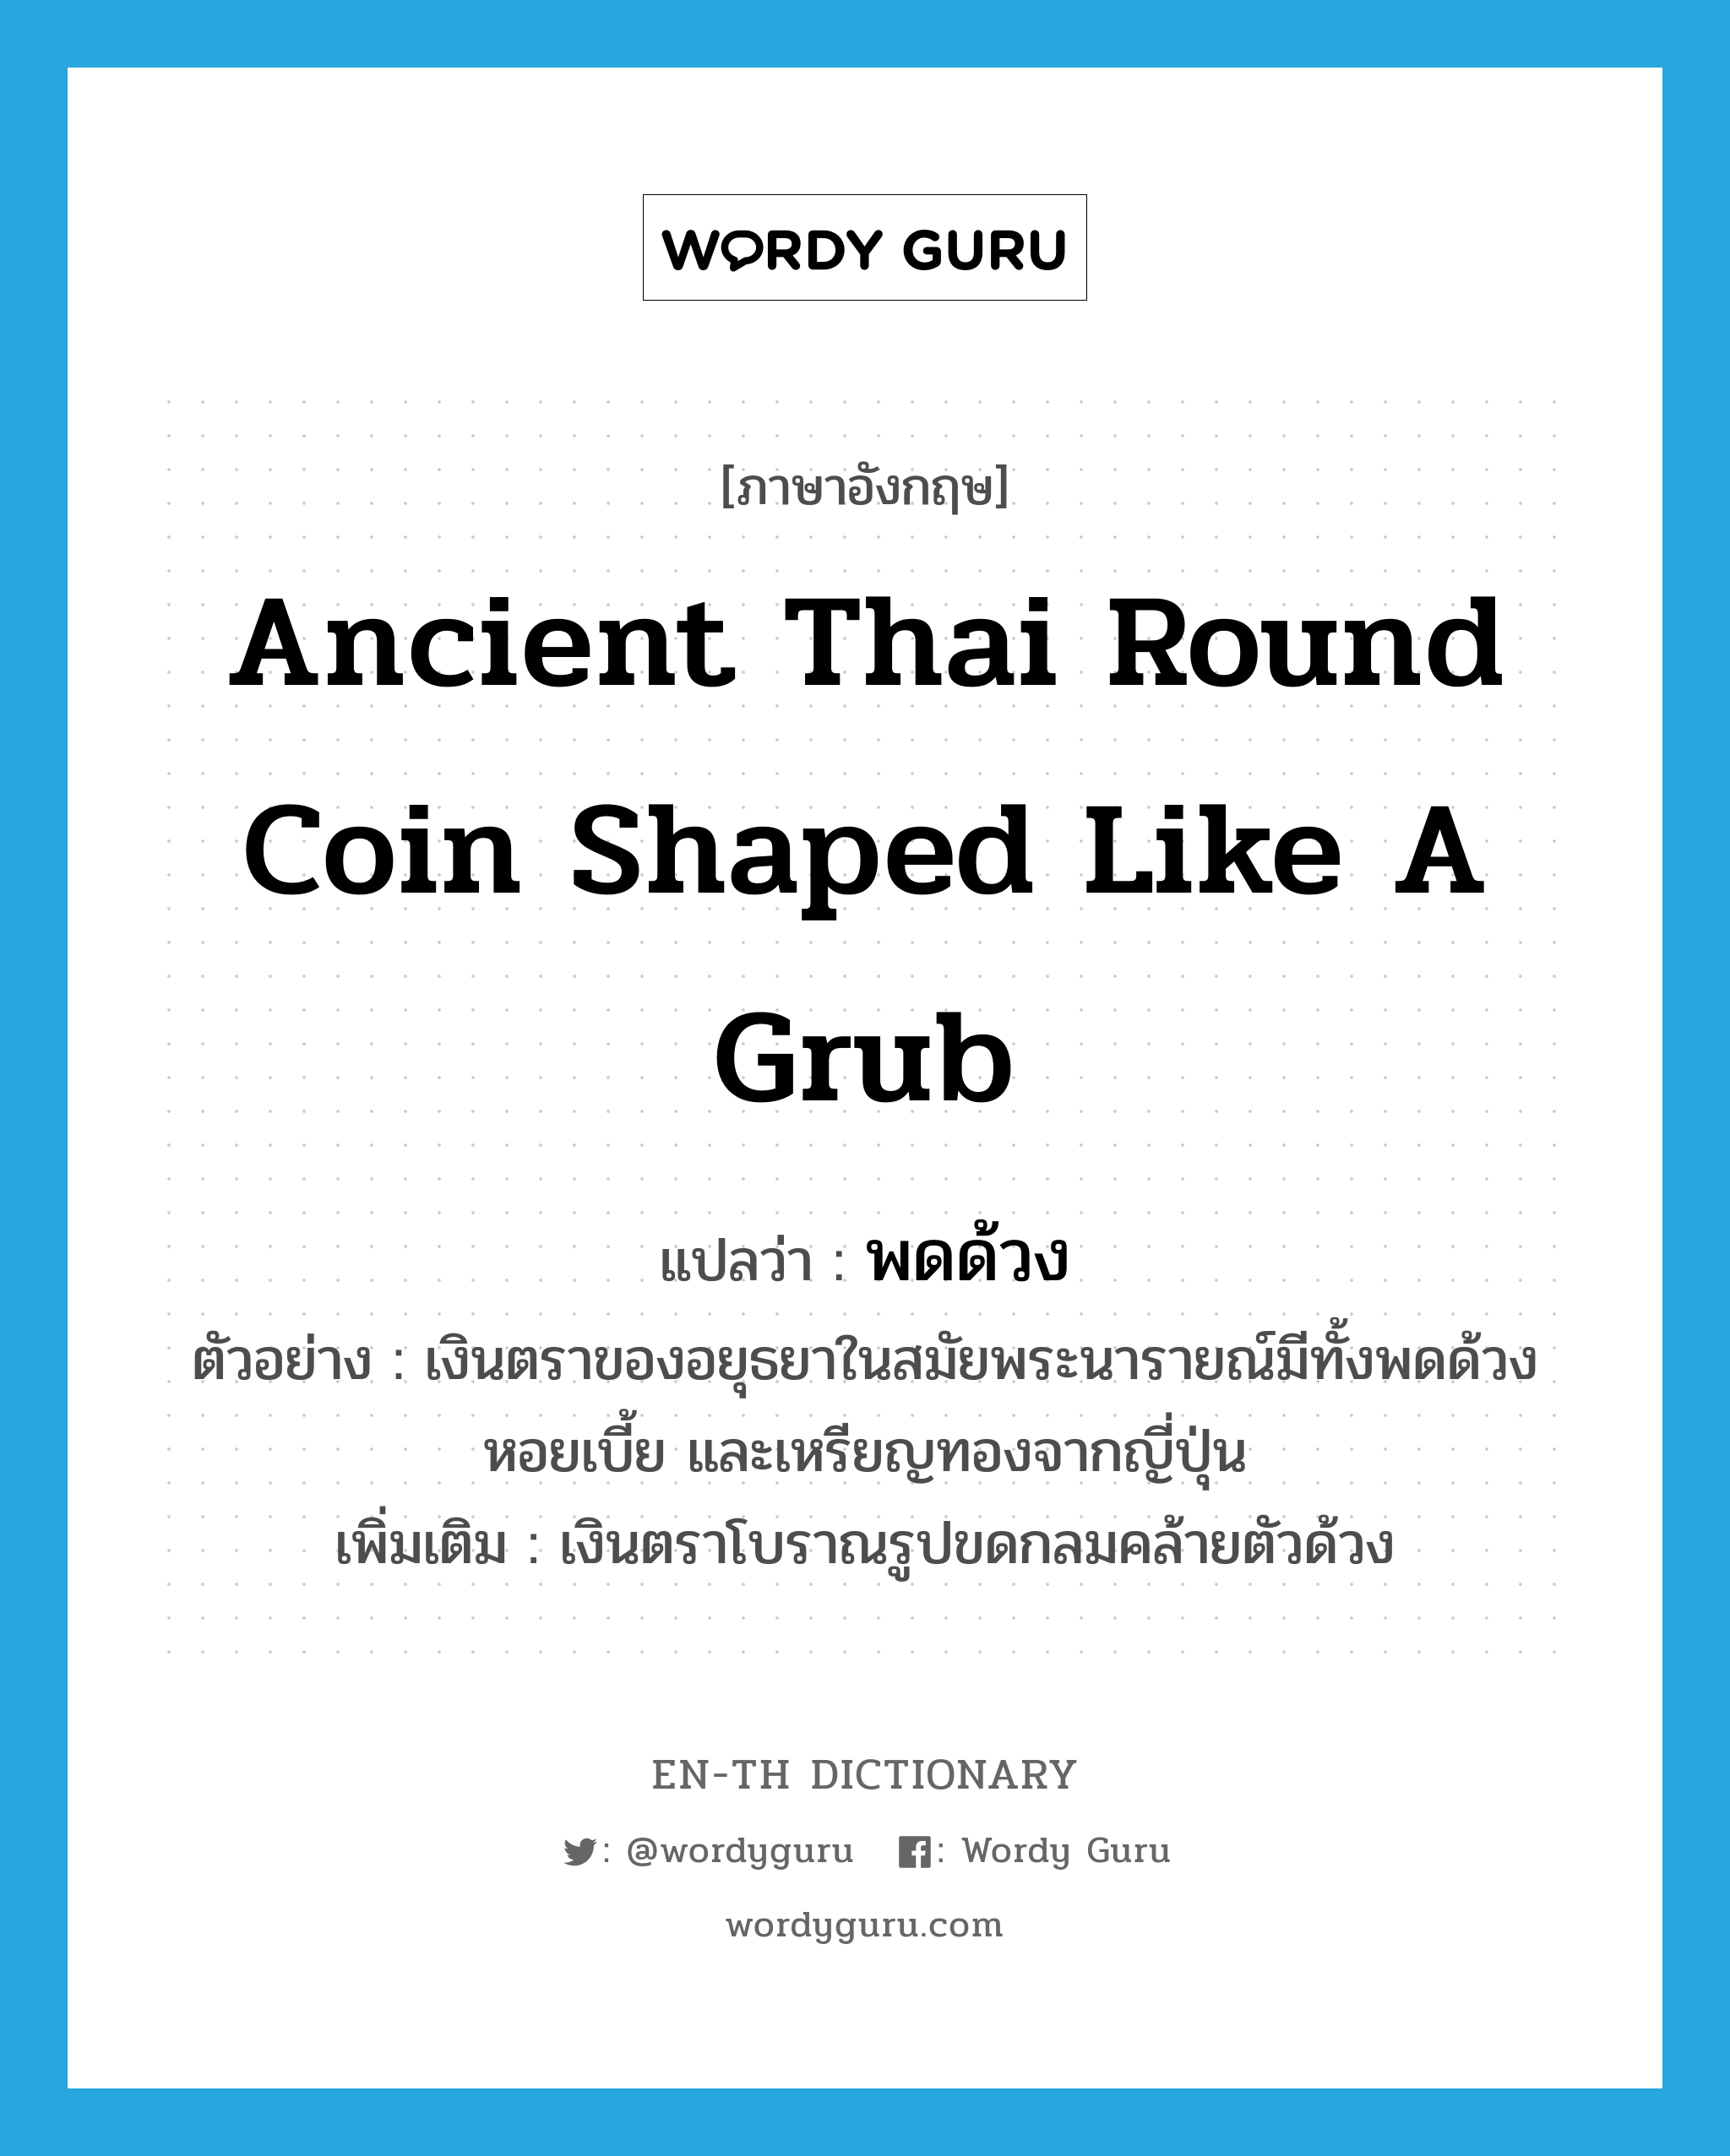 ancient Thai round coin shaped like a grub แปลว่า?, คำศัพท์ภาษาอังกฤษ ancient Thai round coin shaped like a grub แปลว่า พดด้วง ประเภท N ตัวอย่าง เงินตราของอยุธยาในสมัยพระนารายณ์มีทั้งพดด้วง หอยเบี้ย และเหรียญทองจากญี่ปุ่น เพิ่มเติม เงินตราโบราณรูปขดกลมคล้ายตัวด้วง หมวด N